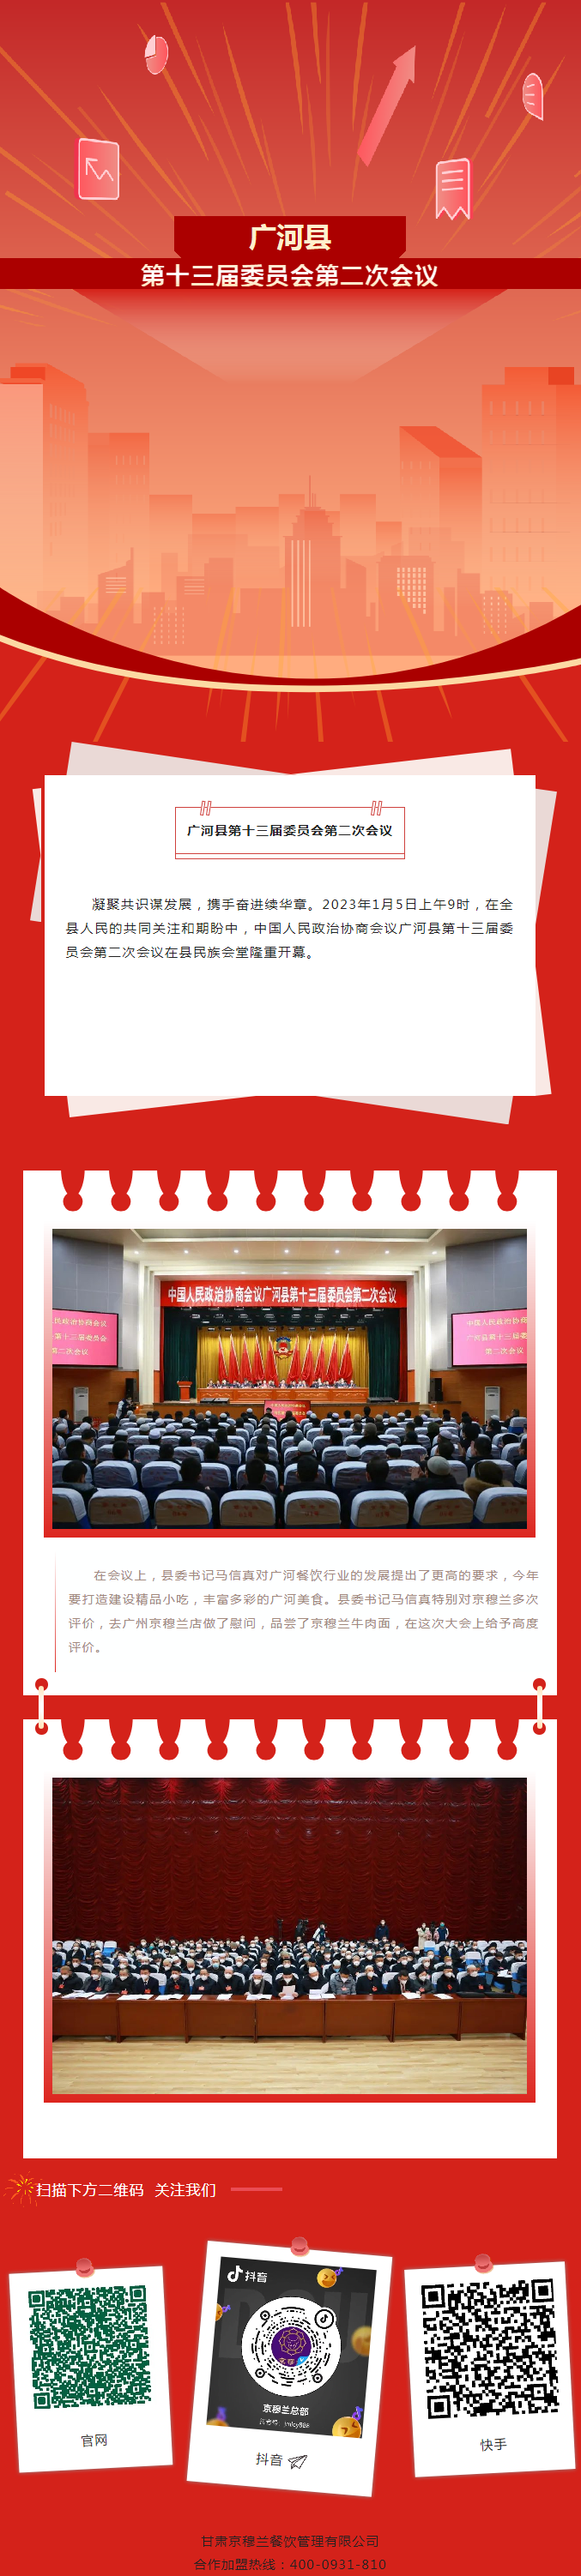 中国人民政治协商会议广河县第十三届委员会第二次会议隆重开幕.png